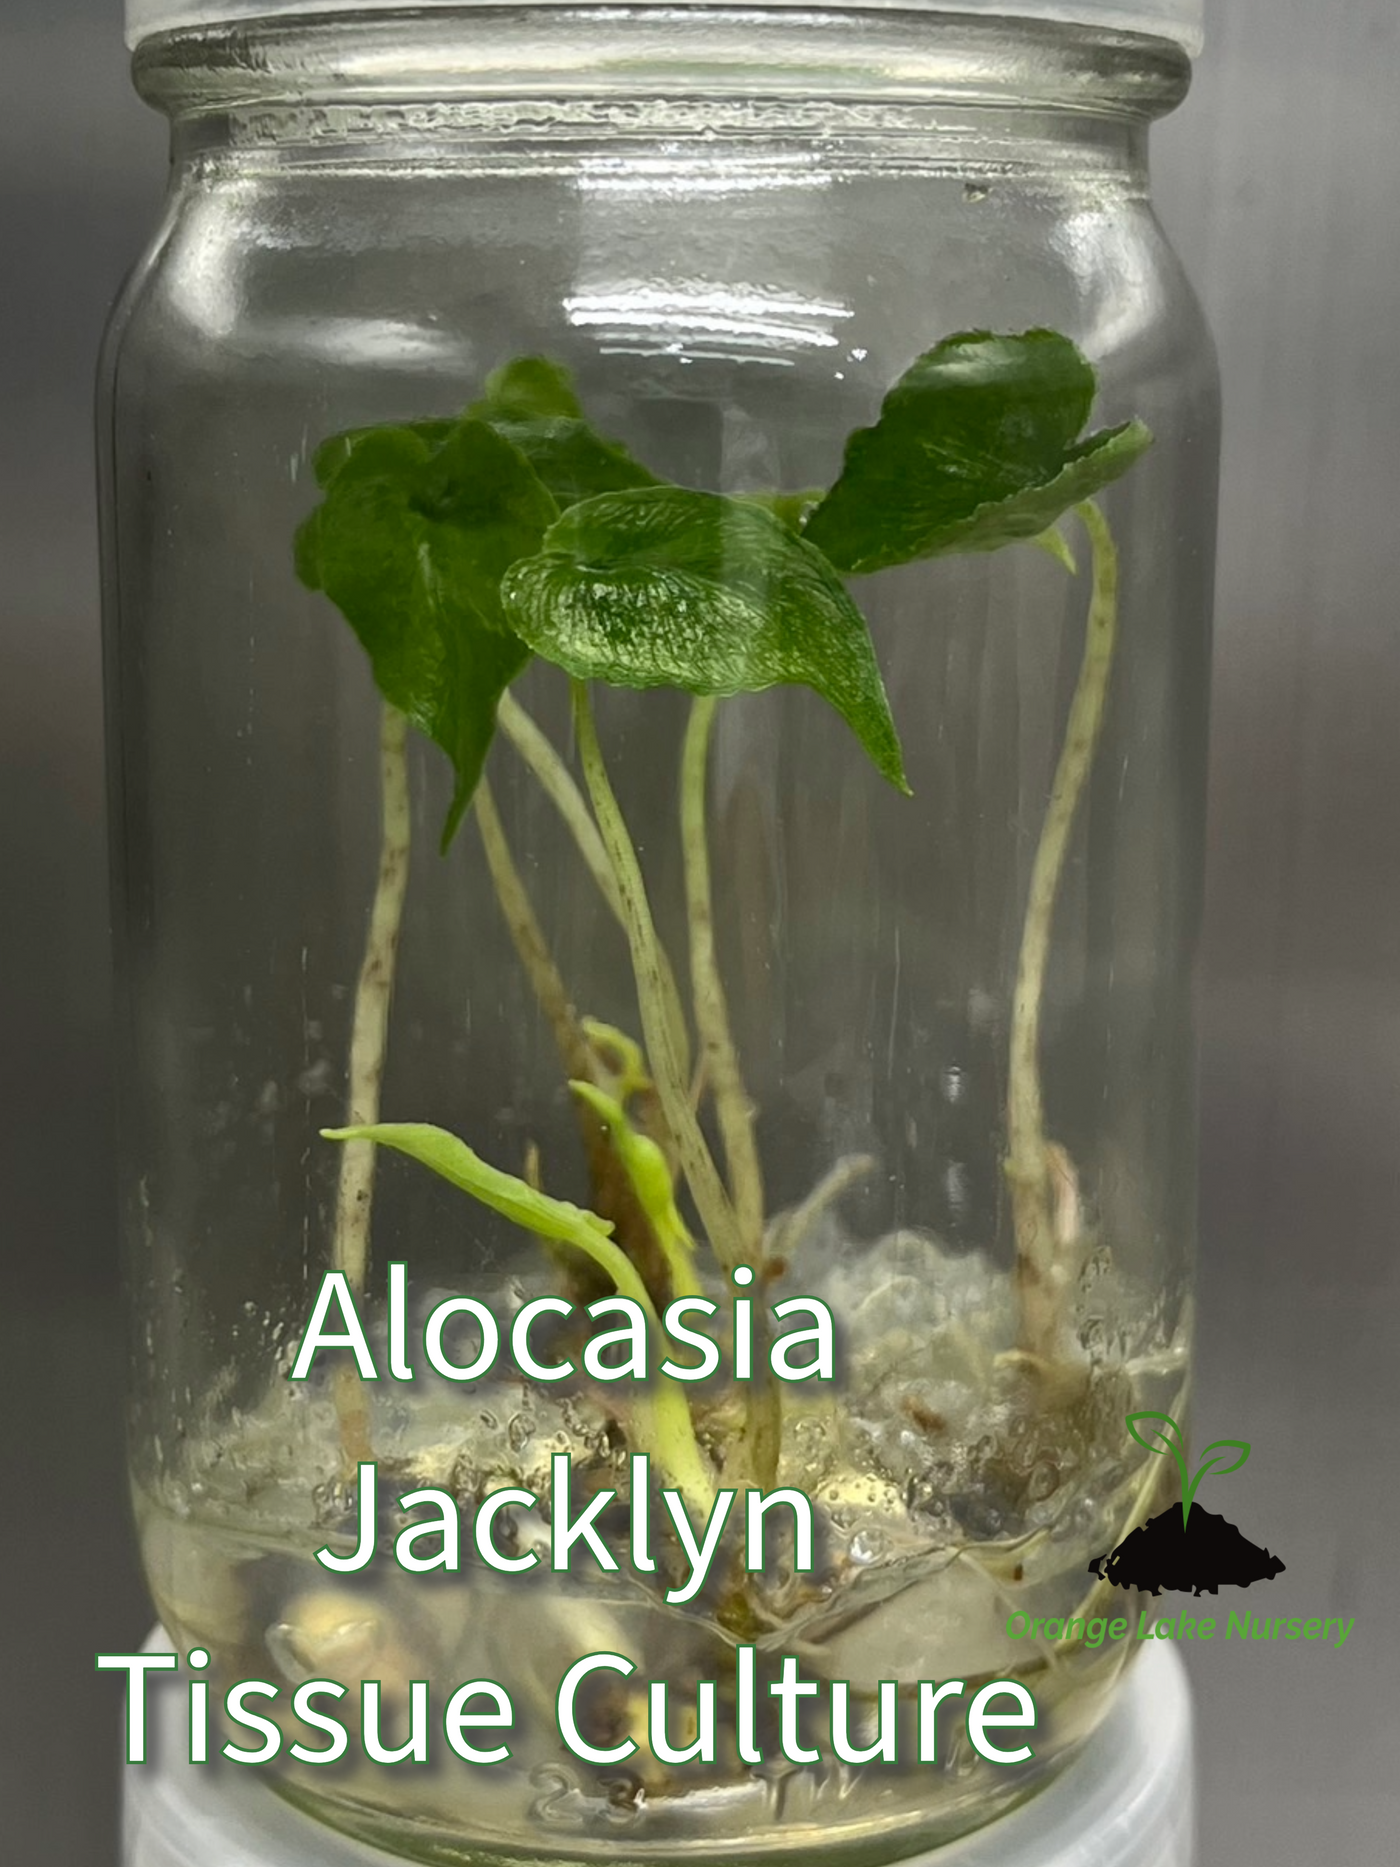 Alocasia Jacklyn Plantlets (5)